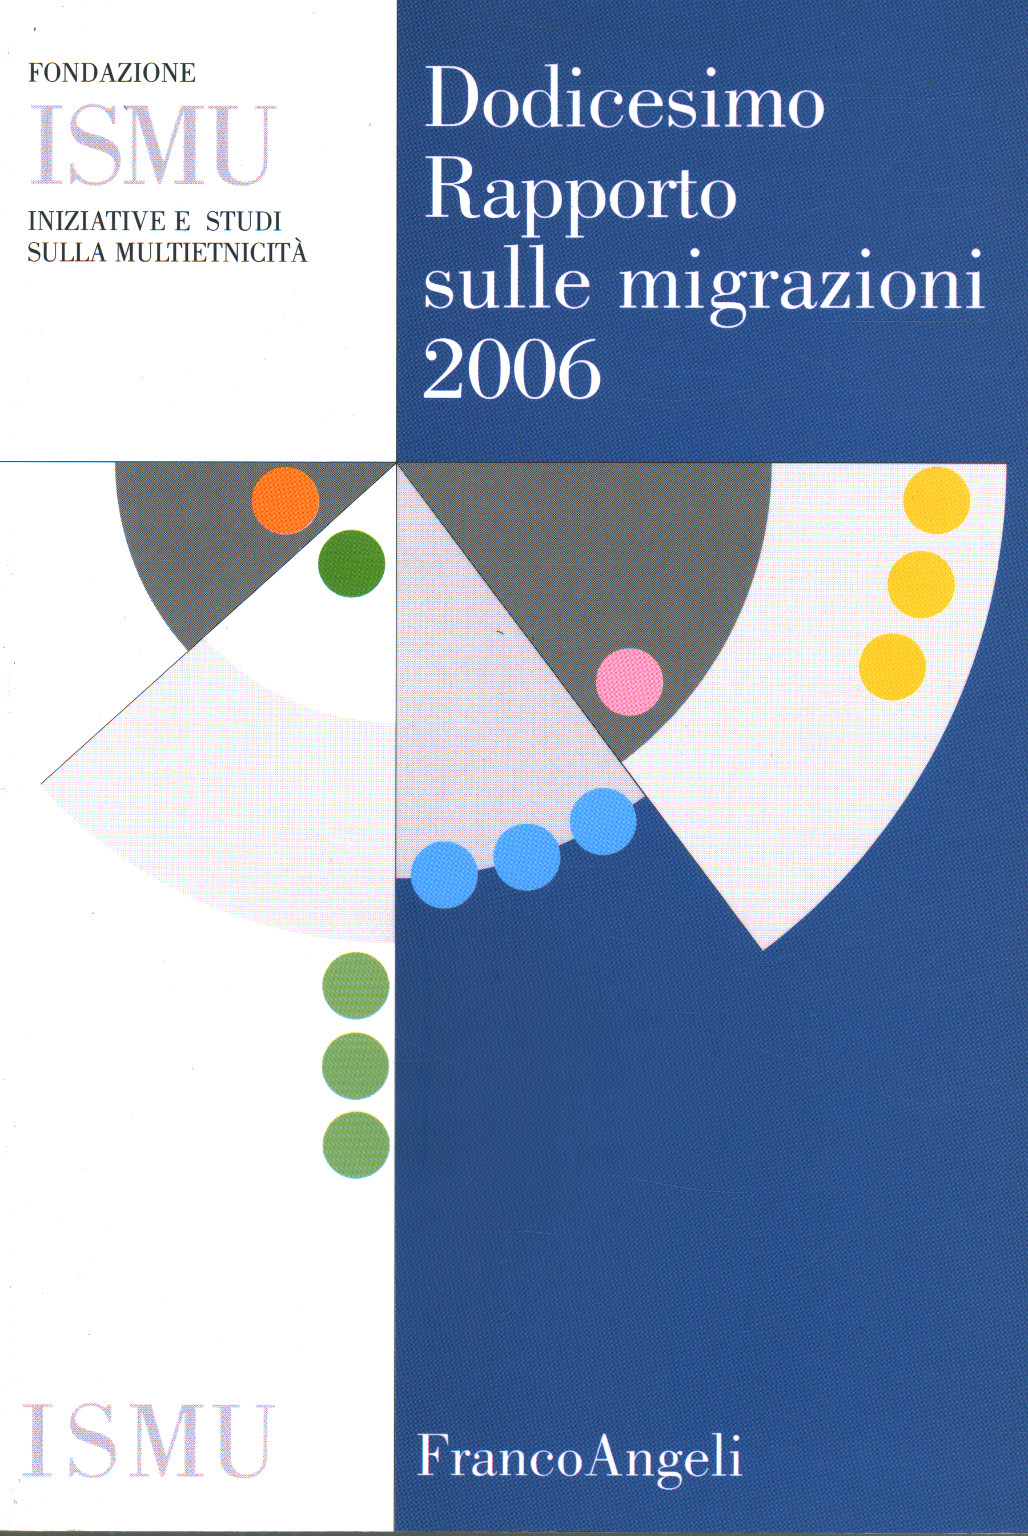 Dodicesimo rapporto sulle migrazioni 2006, s.a.